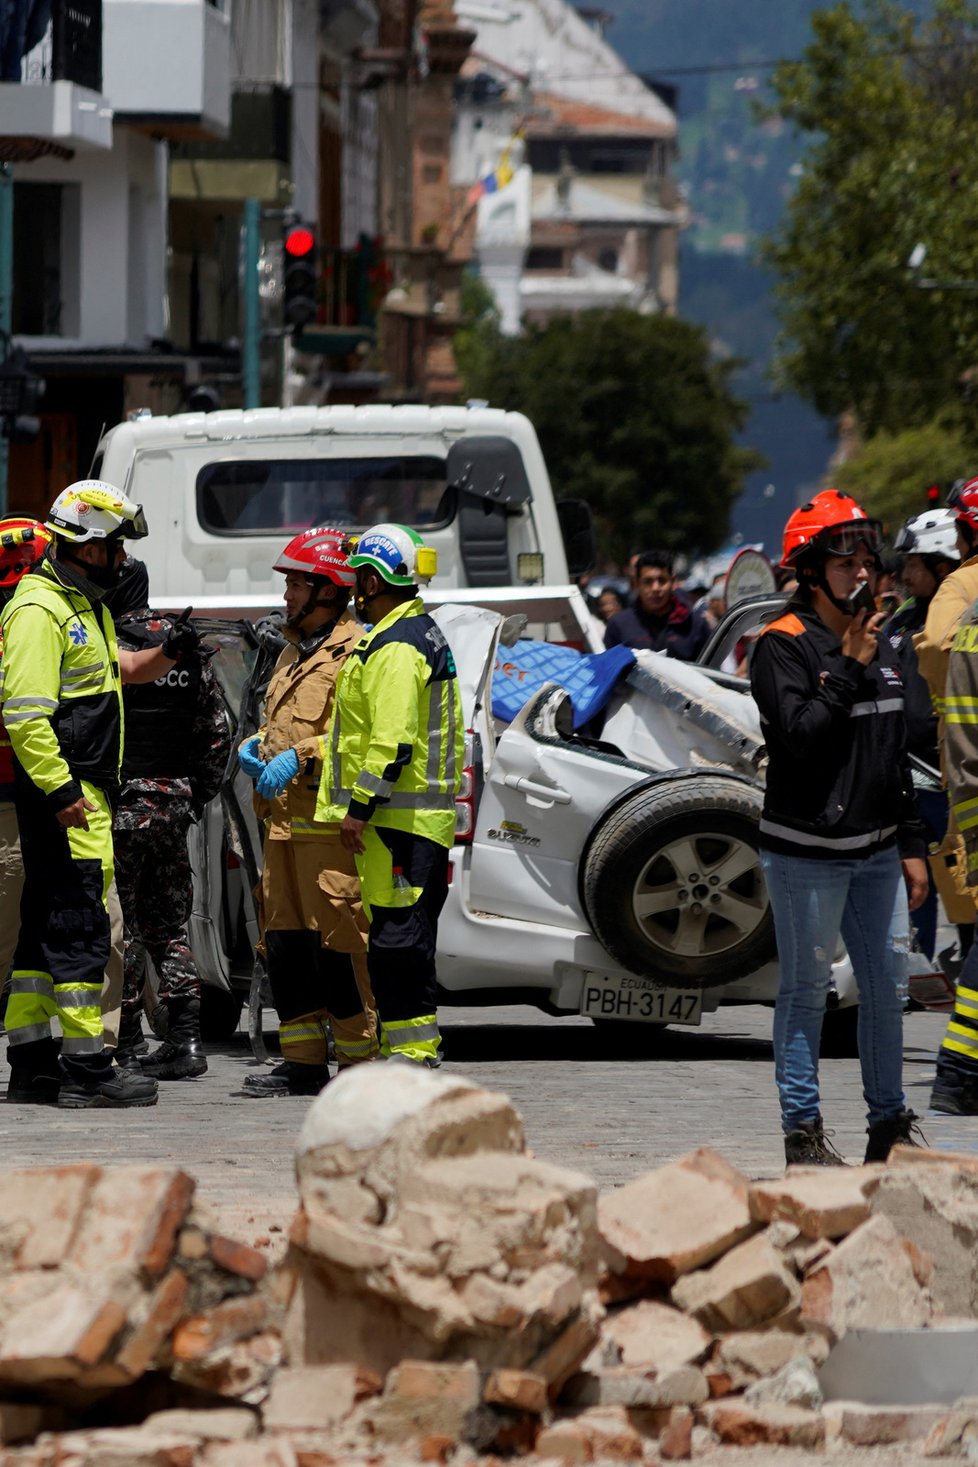 Ekvádor zasáhlo zemětřesení o síle 6,7 stupňů (18.3.2023)